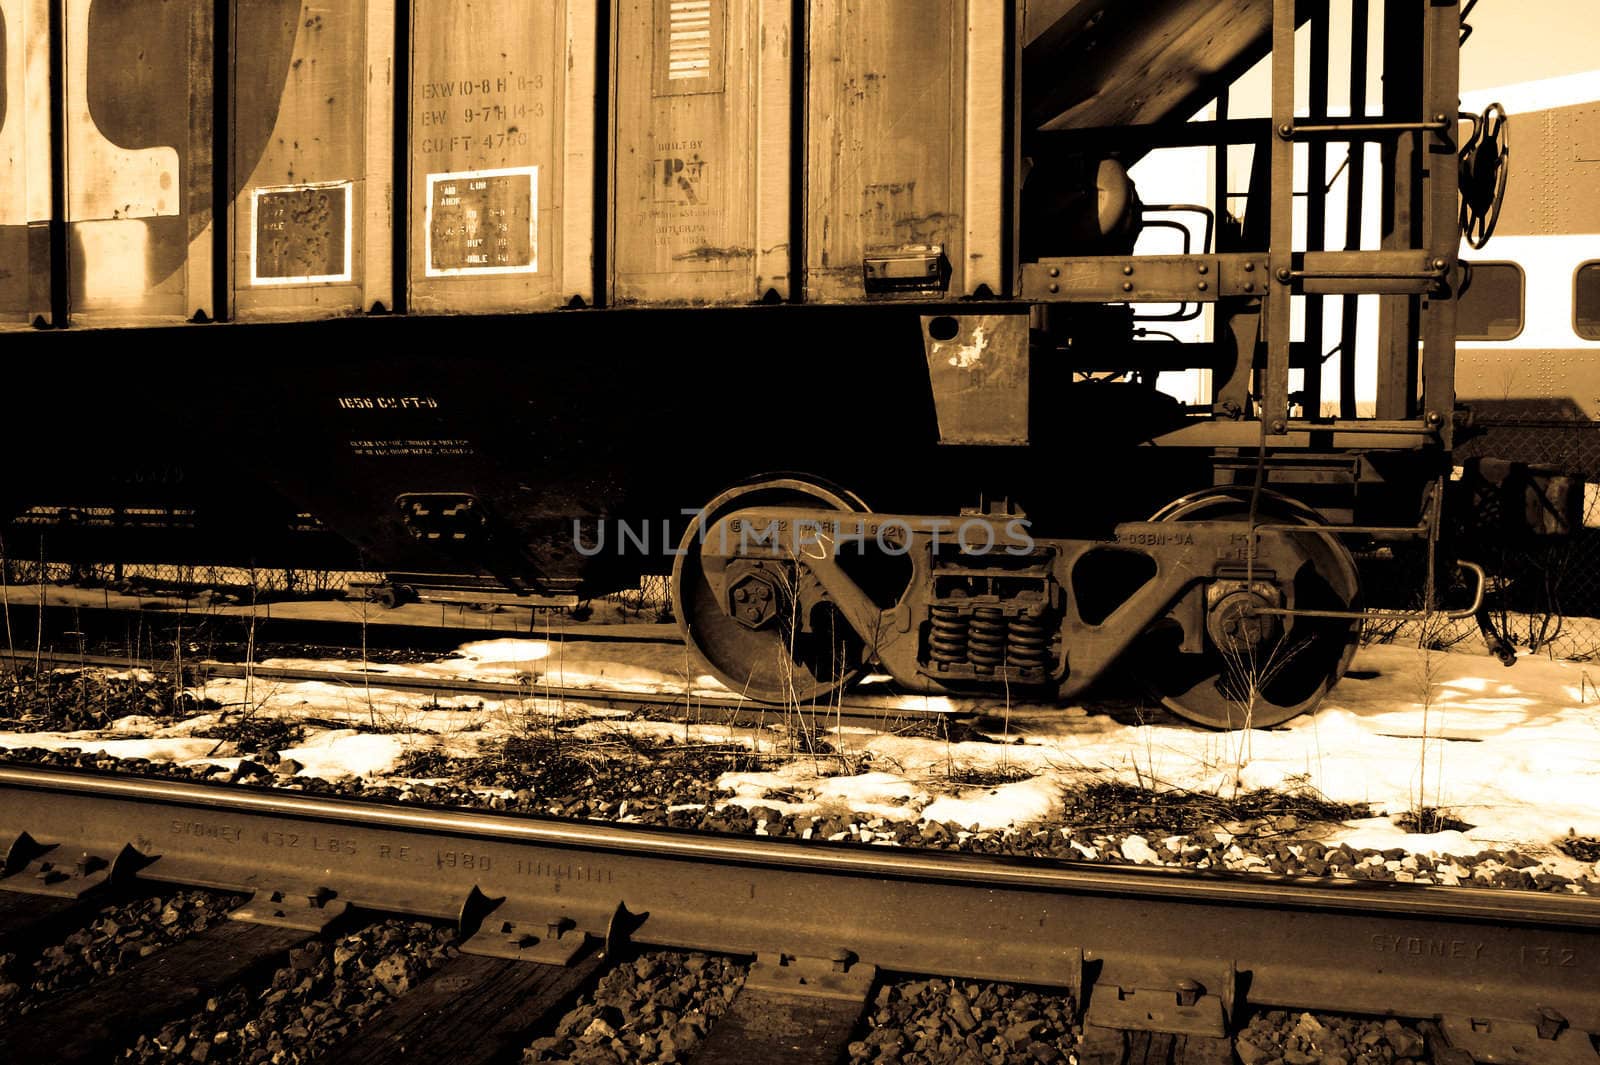 Sepia tone photo of a railroad car sitting on the tracks.